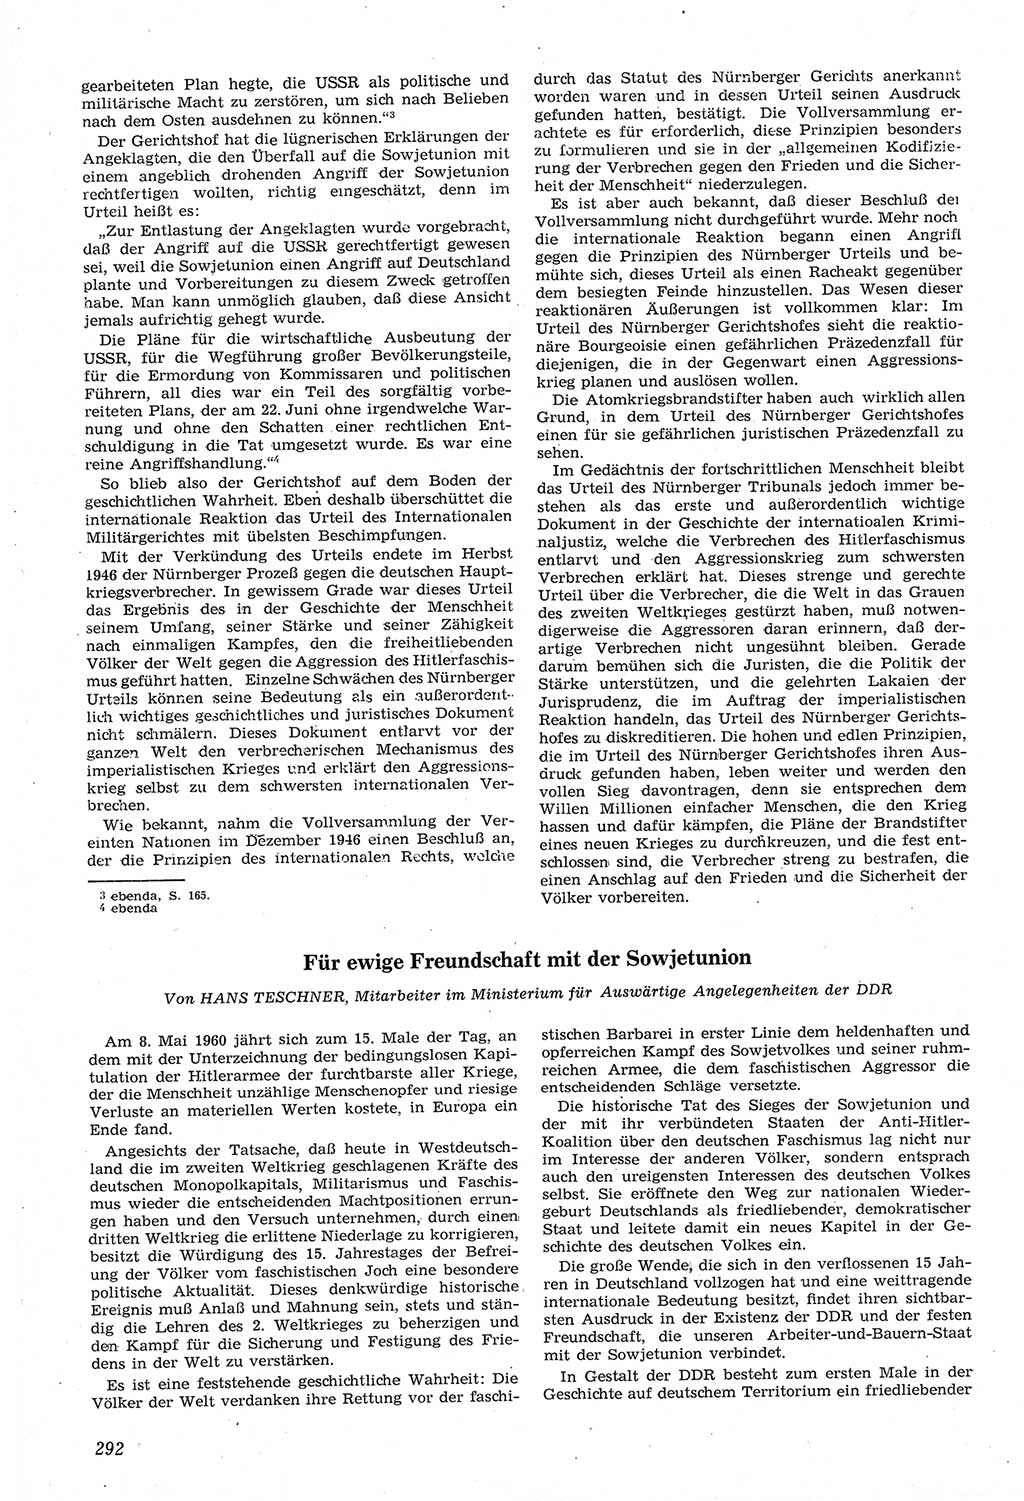 Neue Justiz (NJ), Zeitschrift für Recht und Rechtswissenschaft [Deutsche Demokratische Republik (DDR)], 14. Jahrgang 1960, Seite 292 (NJ DDR 1960, S. 292)